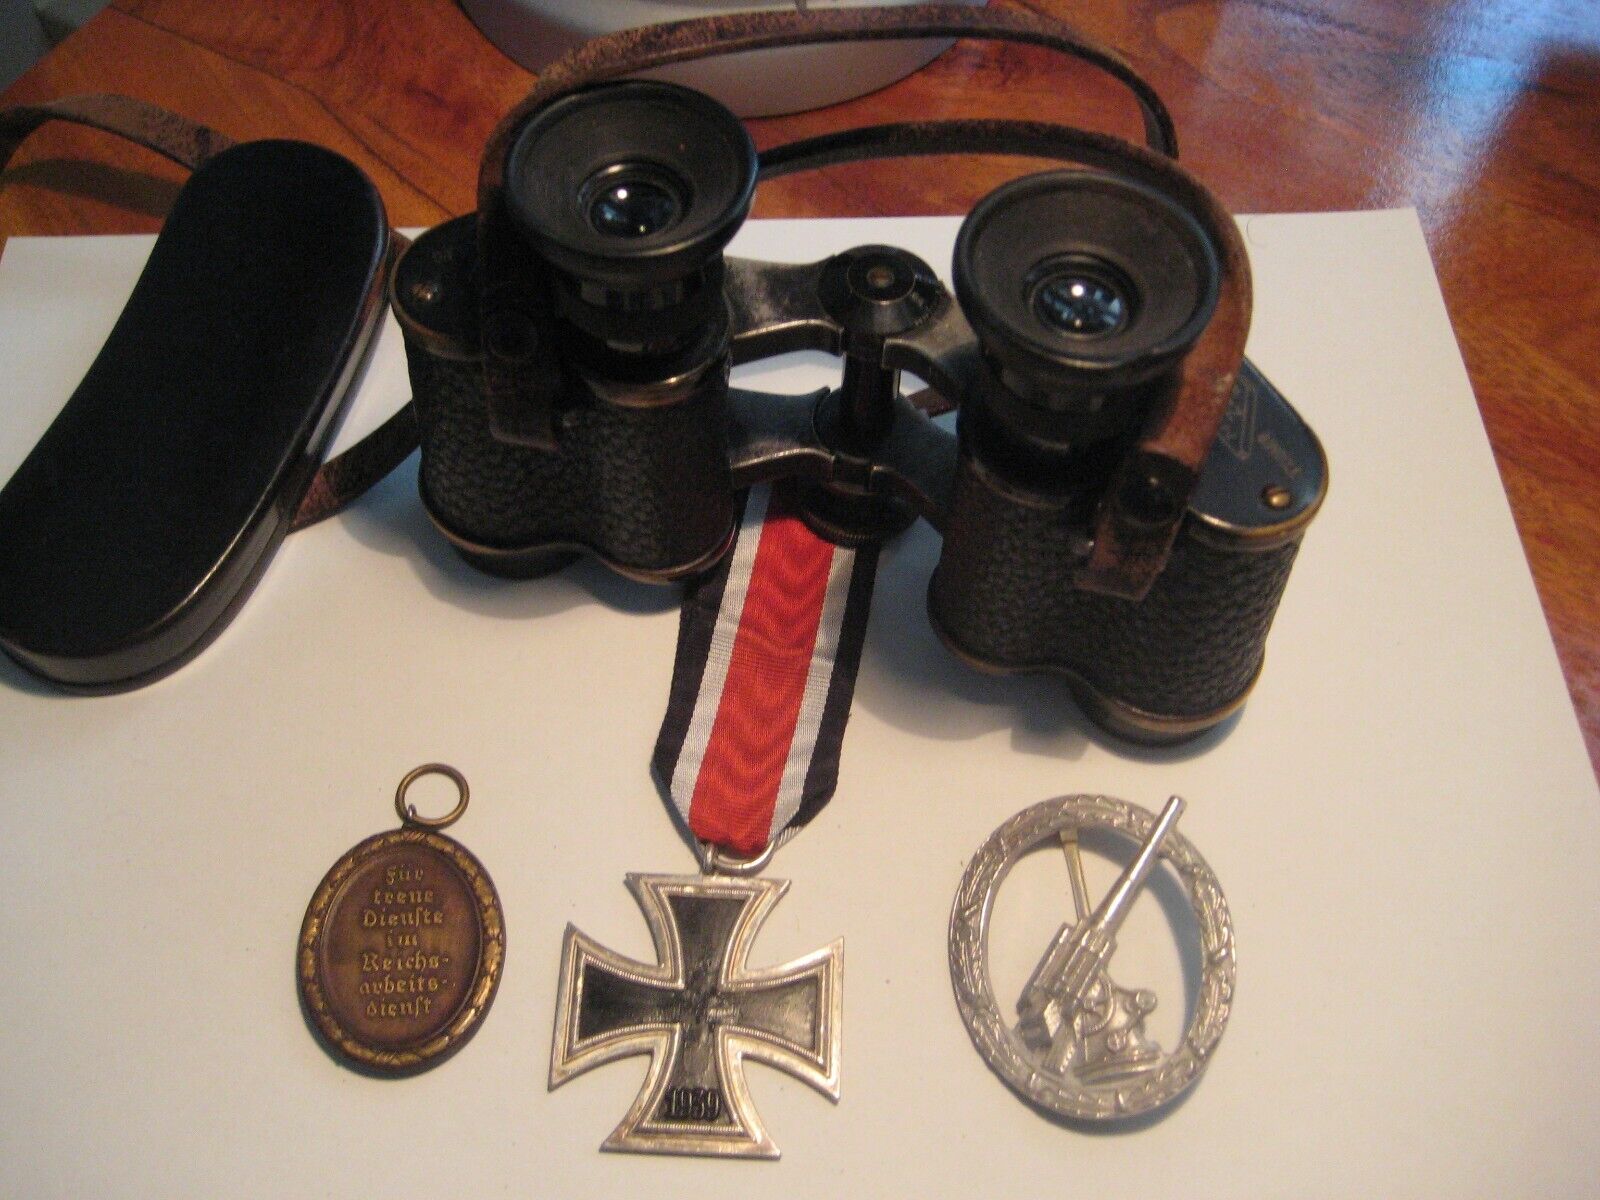 Original German estate of an officer of Wehrmacht iron cross + binoculars glass